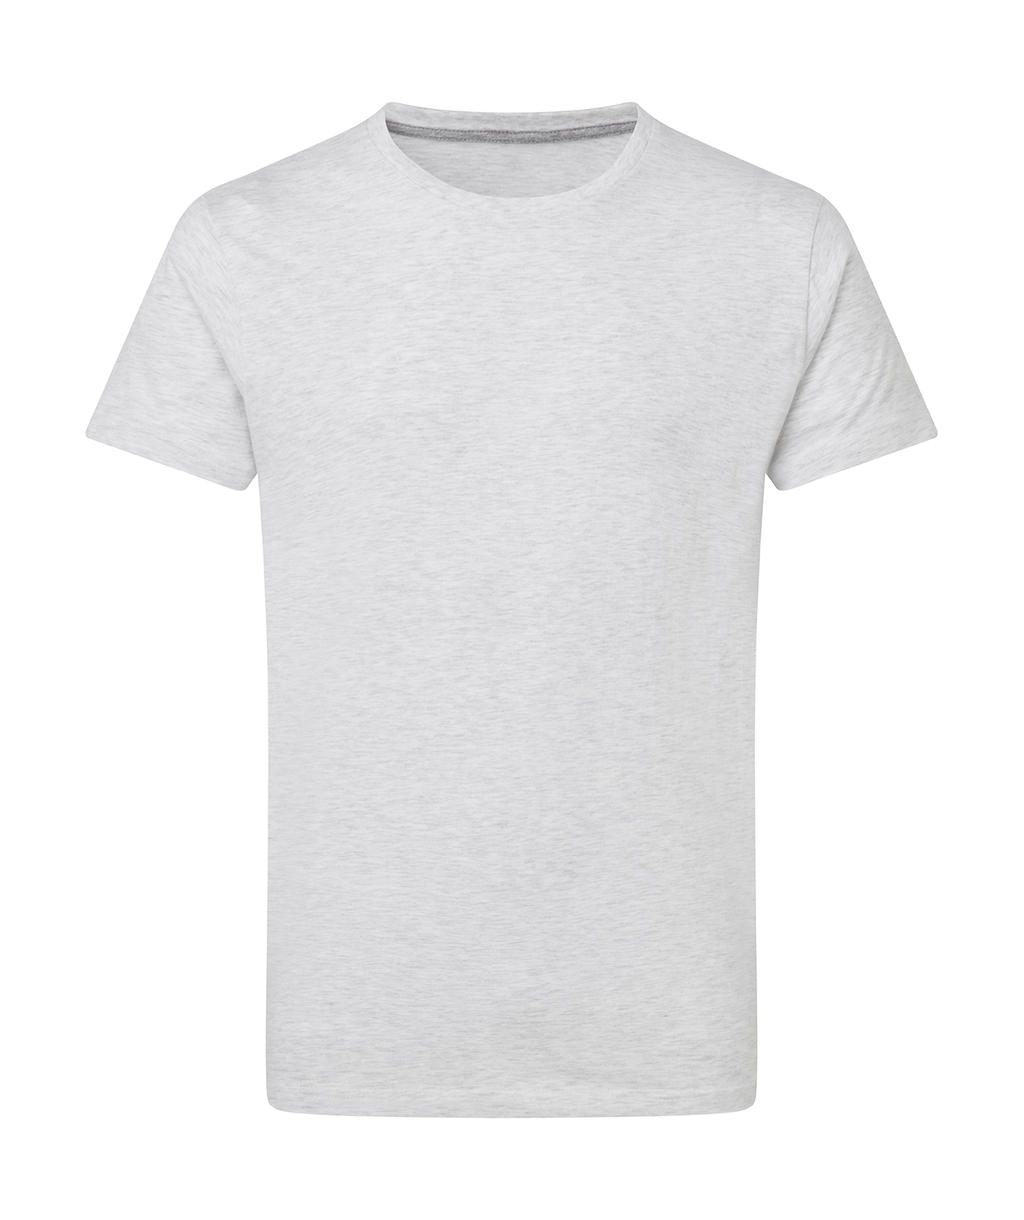 Dokonale potlačiteľné tričko bez štítku - ash grey